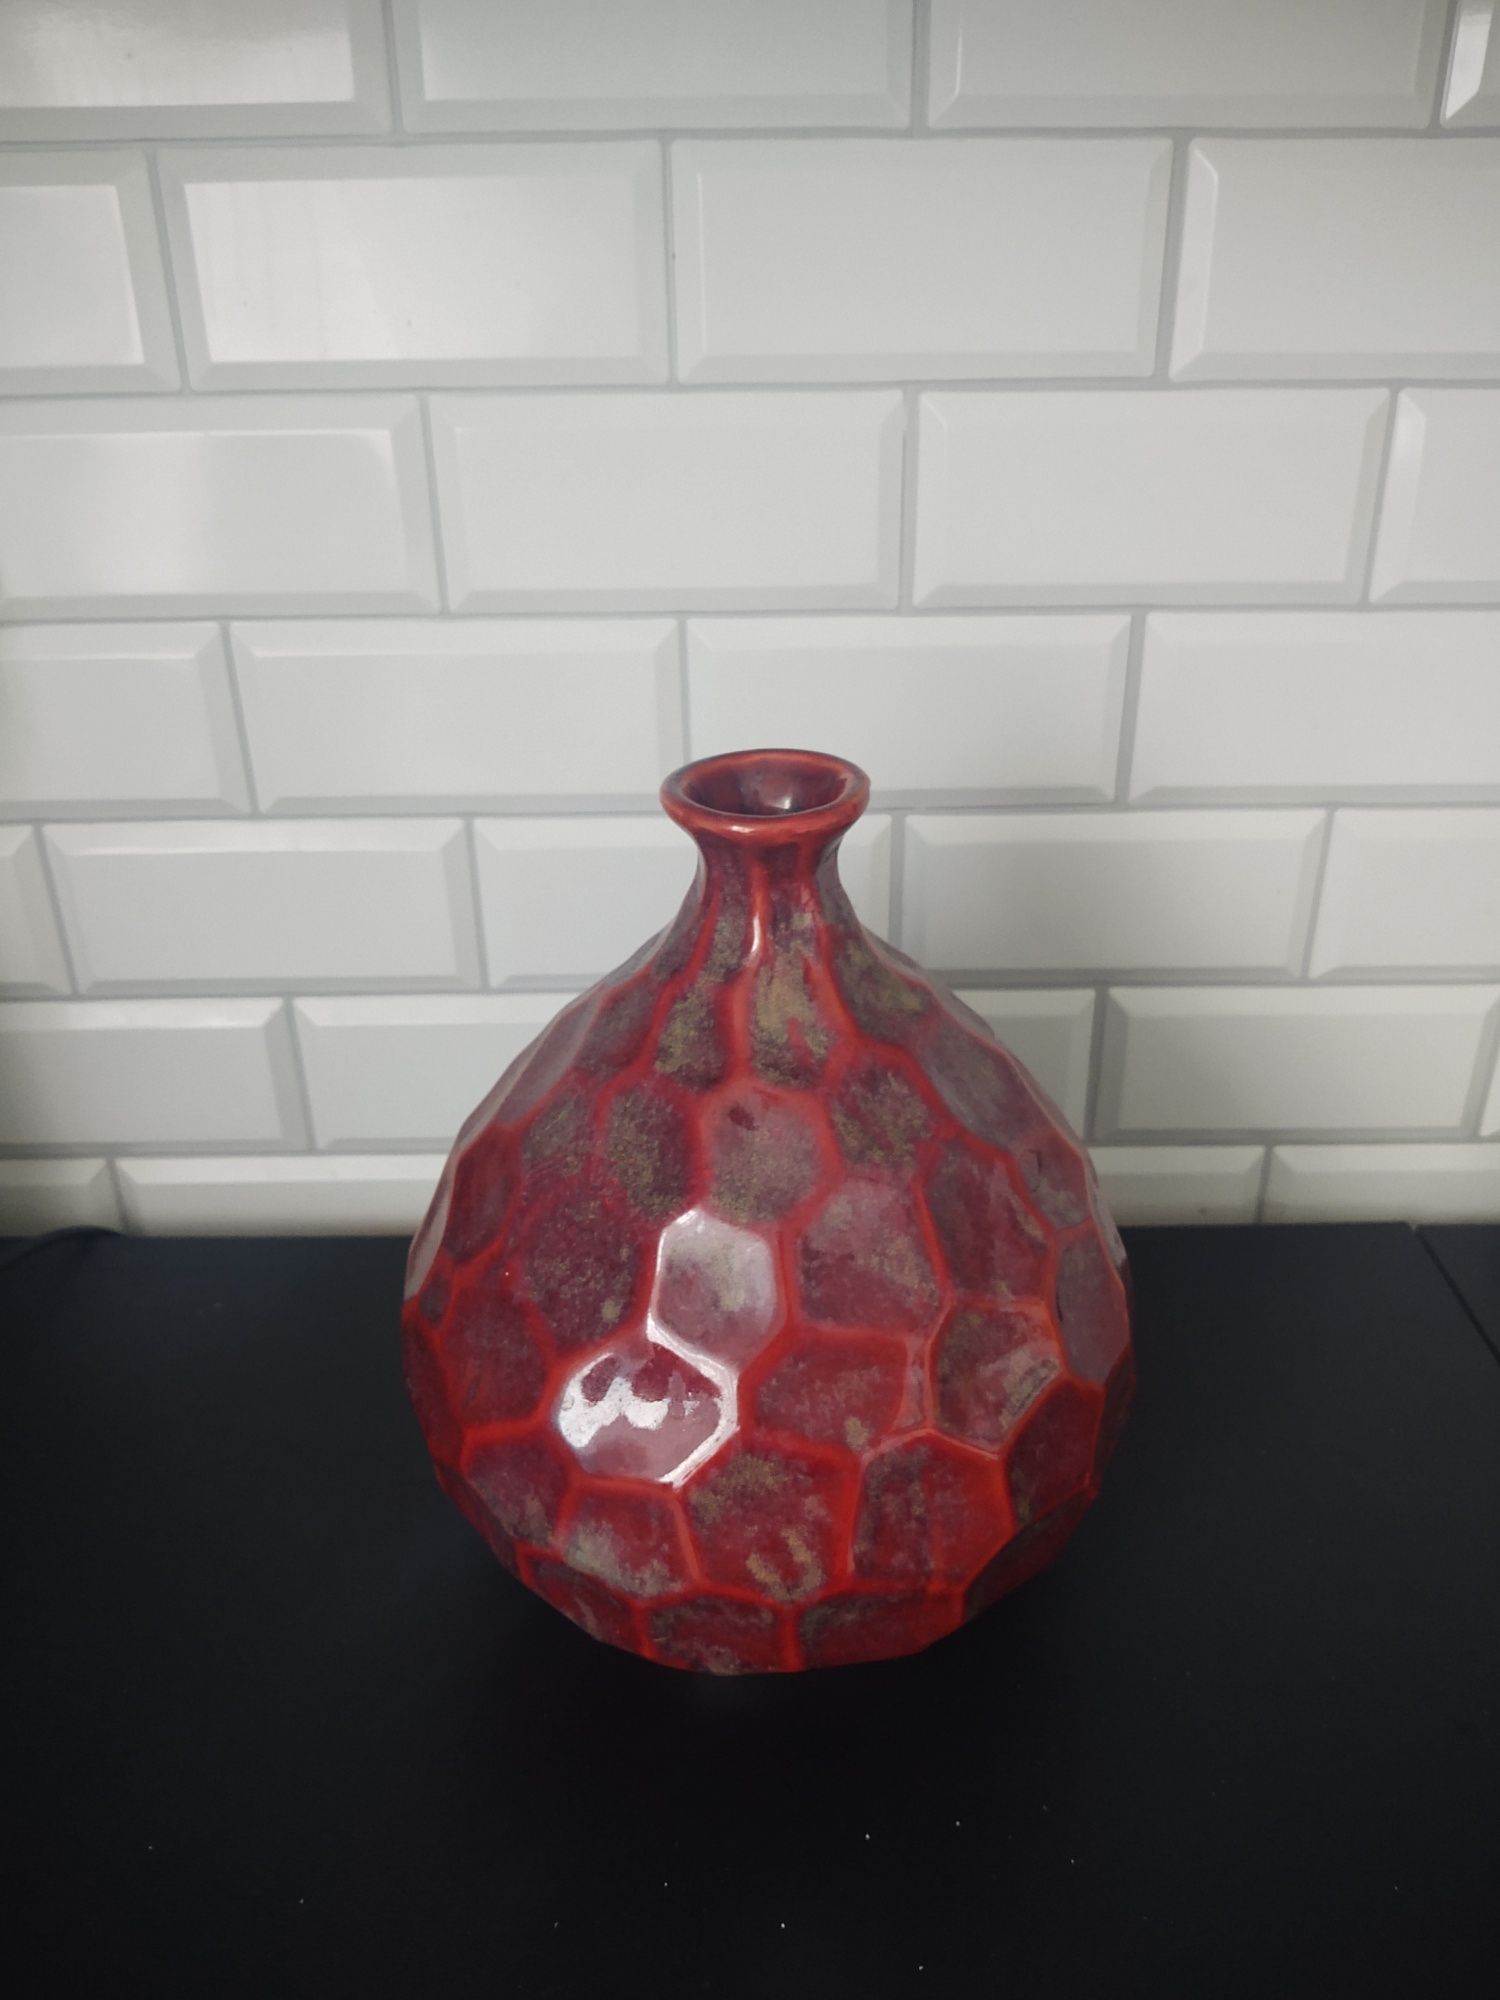 Nowy wazon! Wyjątkowy! Idealny do wielu wnętrz! Możliwość wysyłki Olx